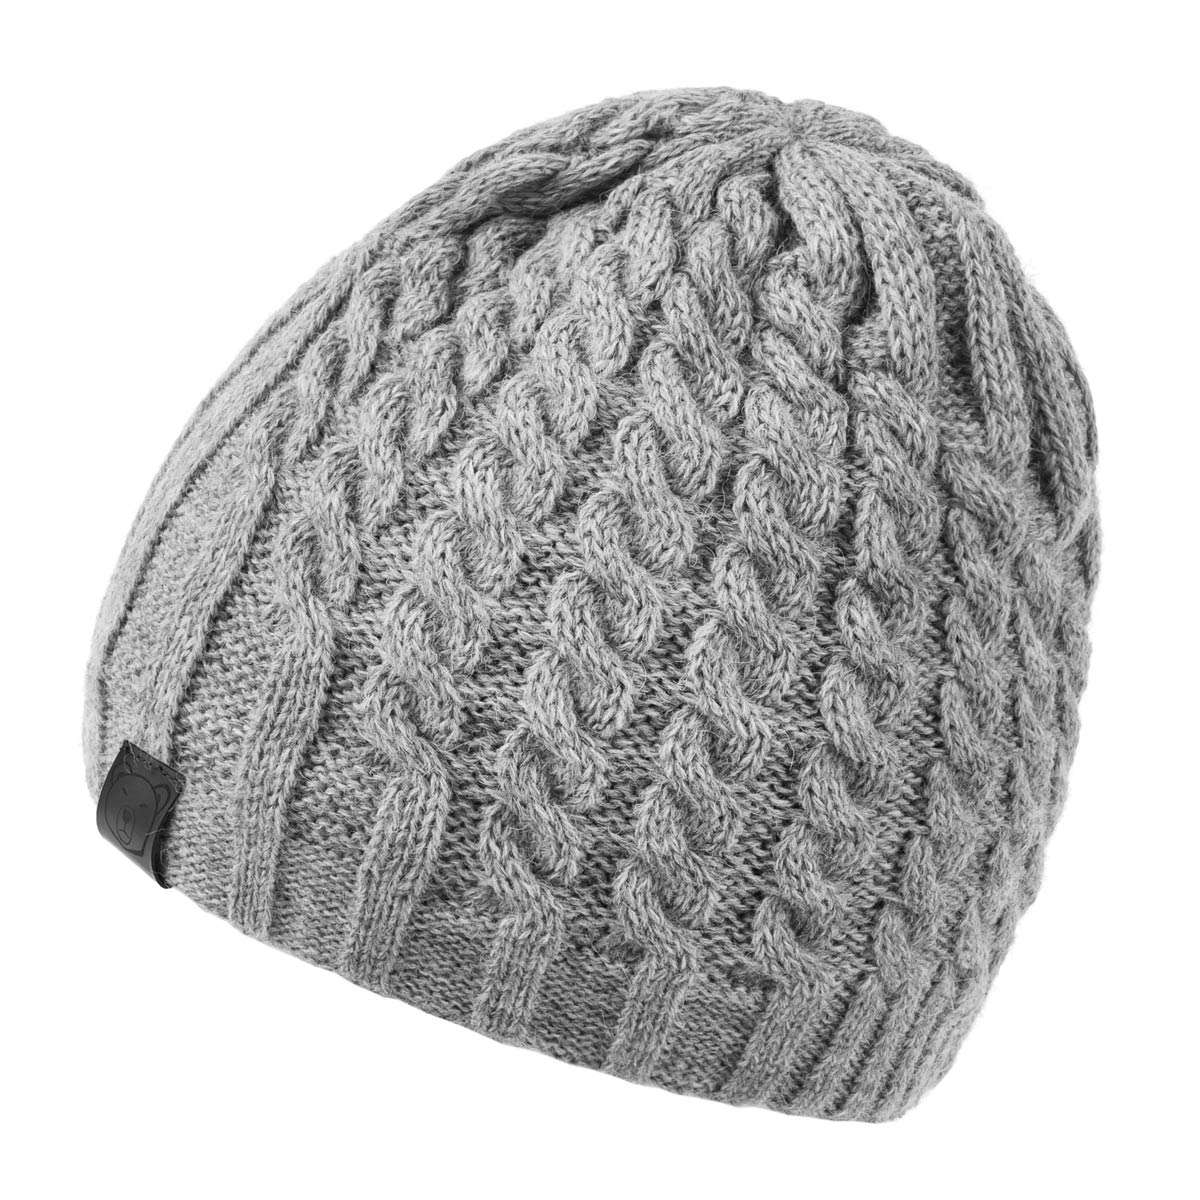 bonnet-femme-hiver-chaud-gris-anthracite-fonce--CP-01666